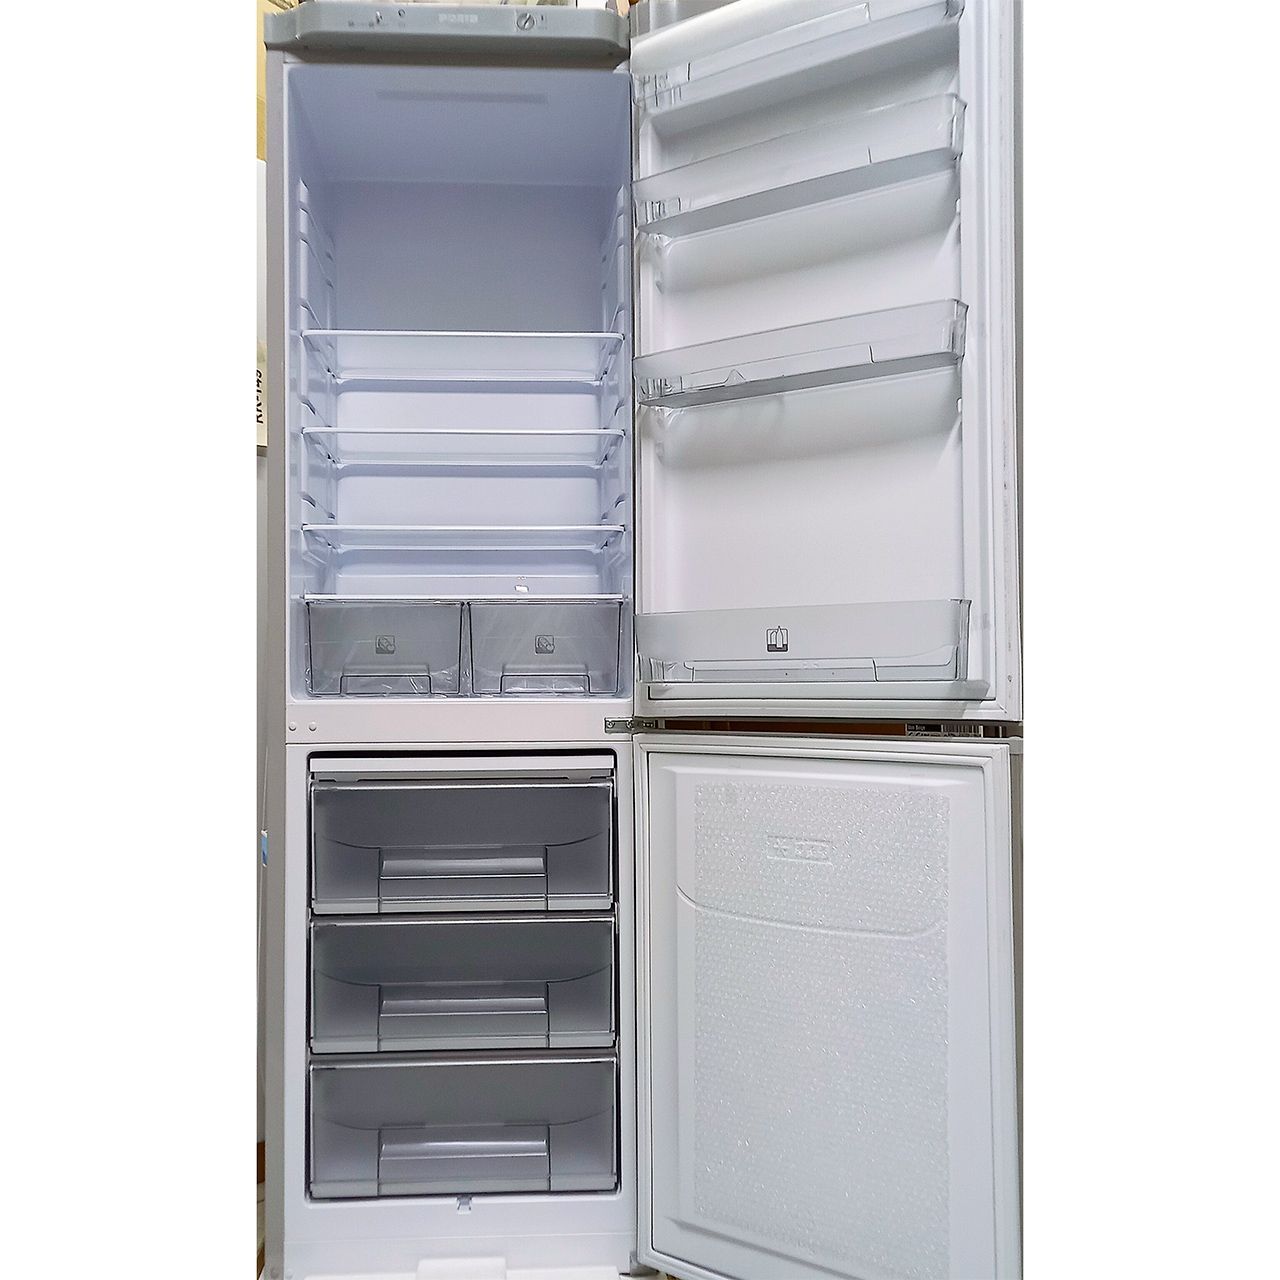 Холодильник двухкамерный Pozis 314 литров